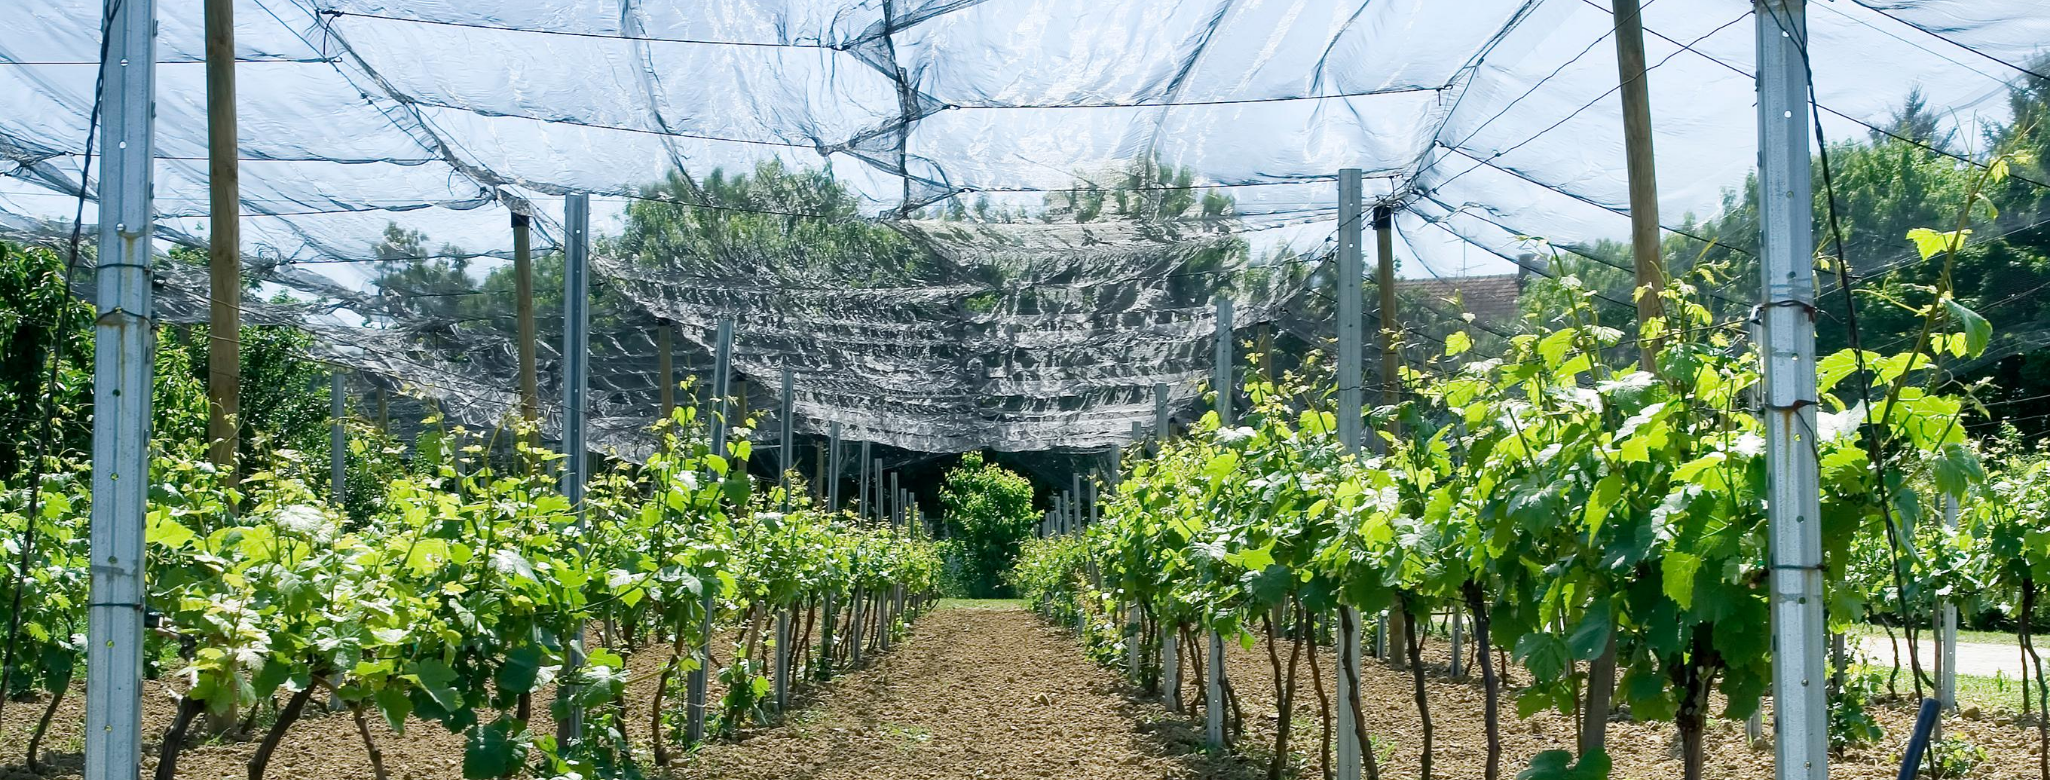 bird netting installed for vineyards